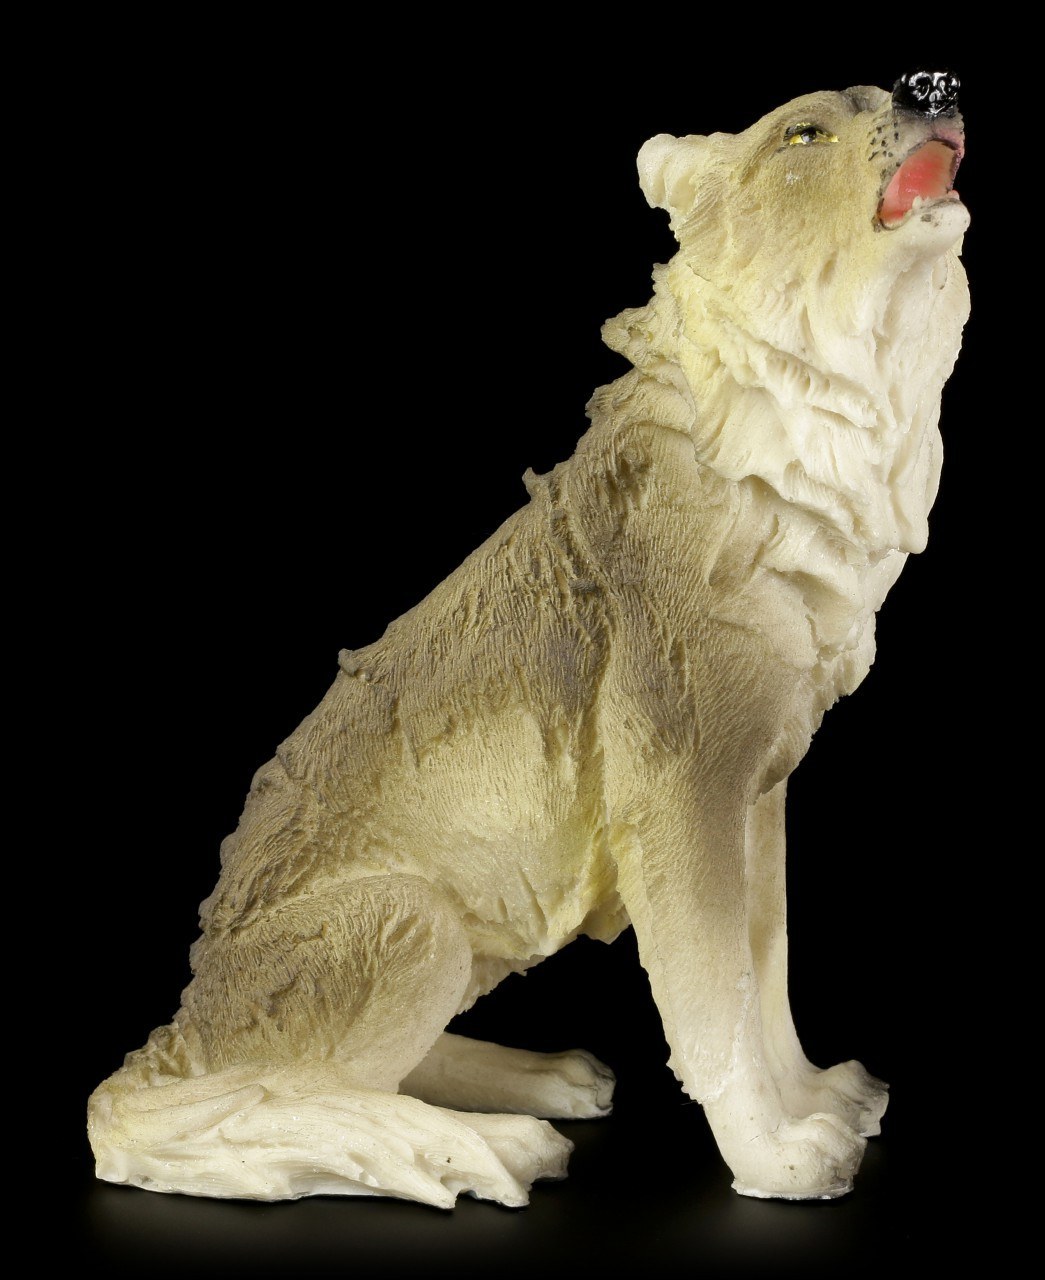 Wolf Figurine - Sitting on the Floor